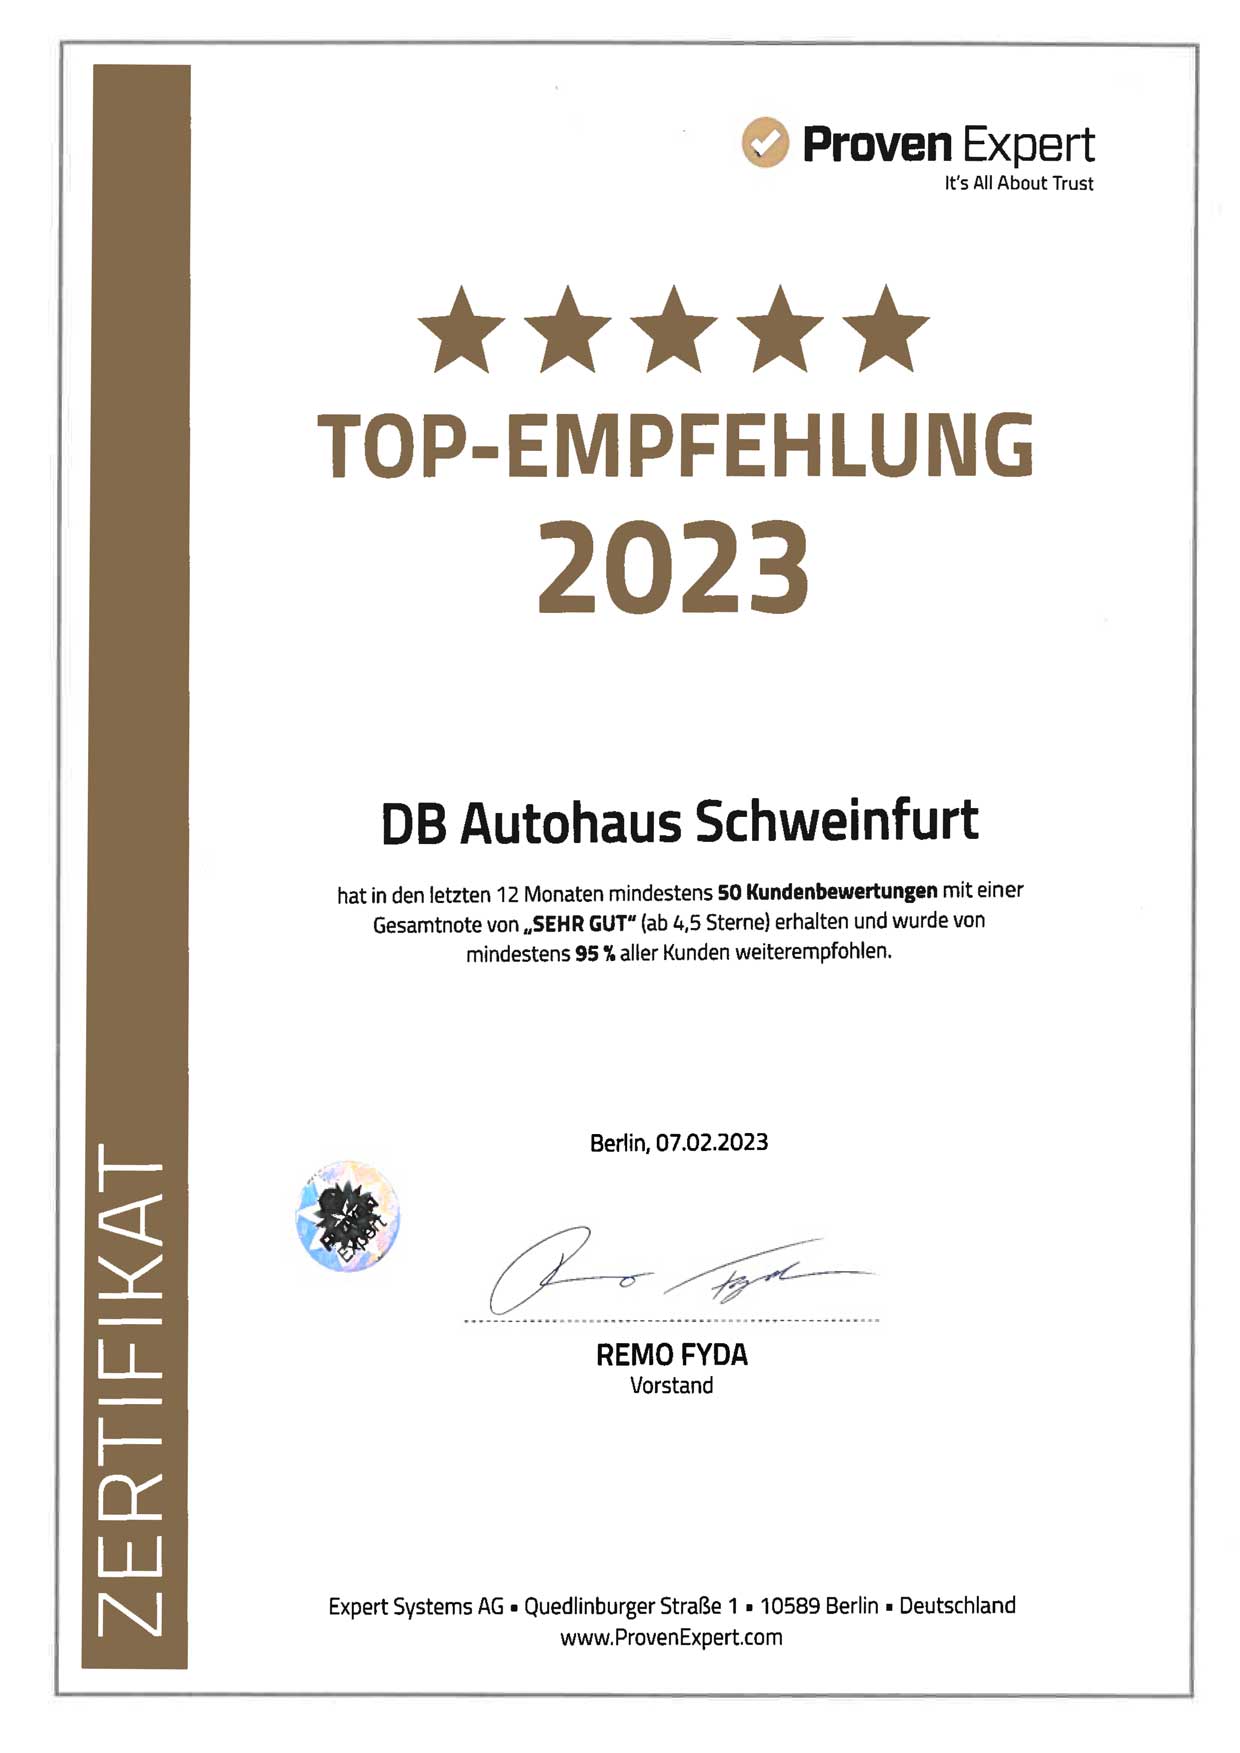 DB Autohaus Schweinfurt wurde als Top-Empfehlung von Proven Expert ausgezeichnet